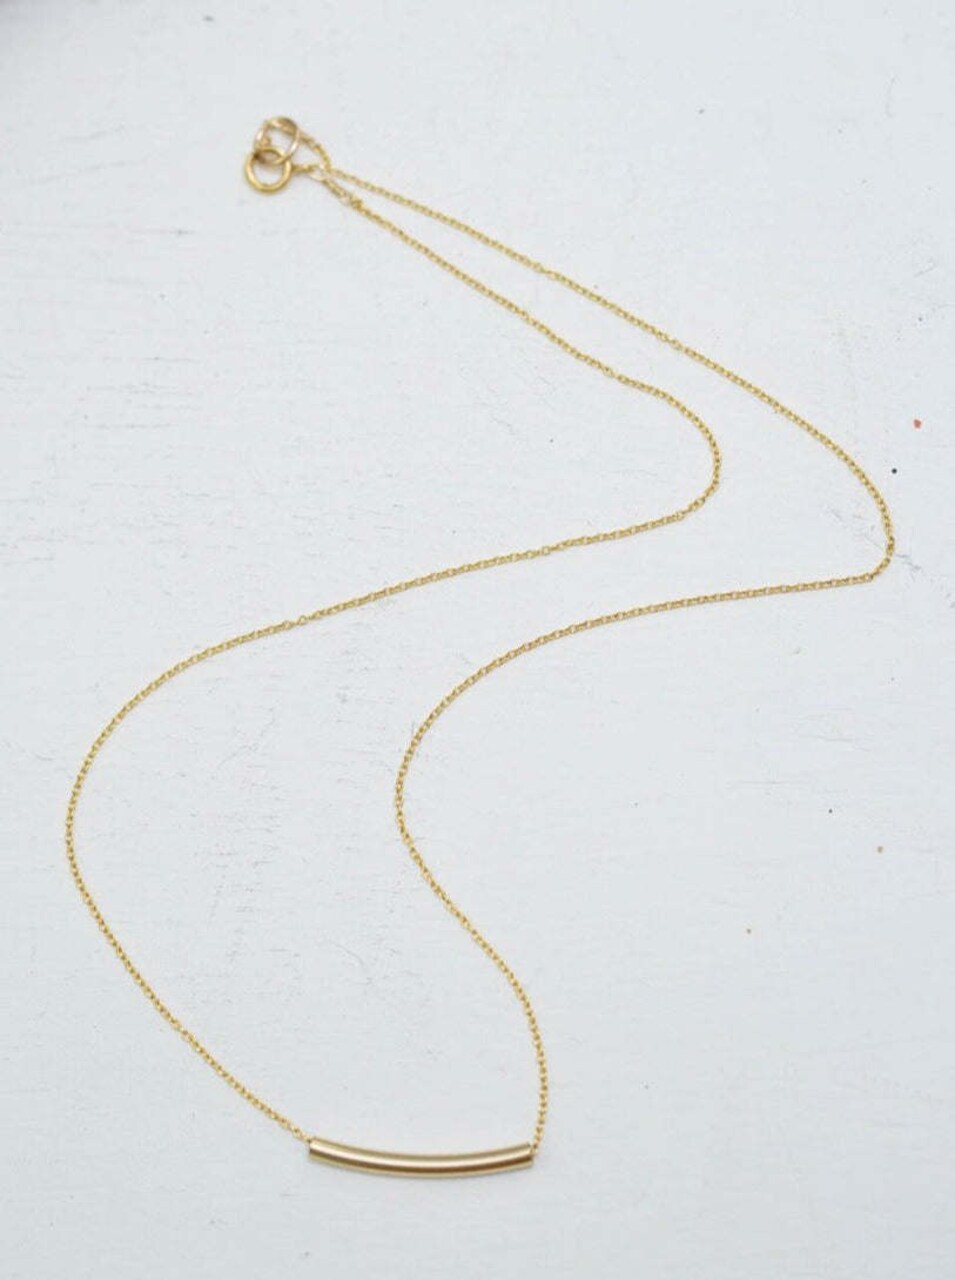 Radiant Elegance: Gold Tube Necklace to Illuminate Your Style